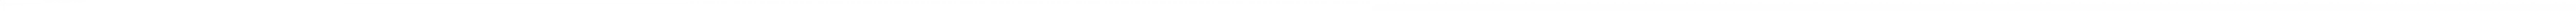 Logo del Partner